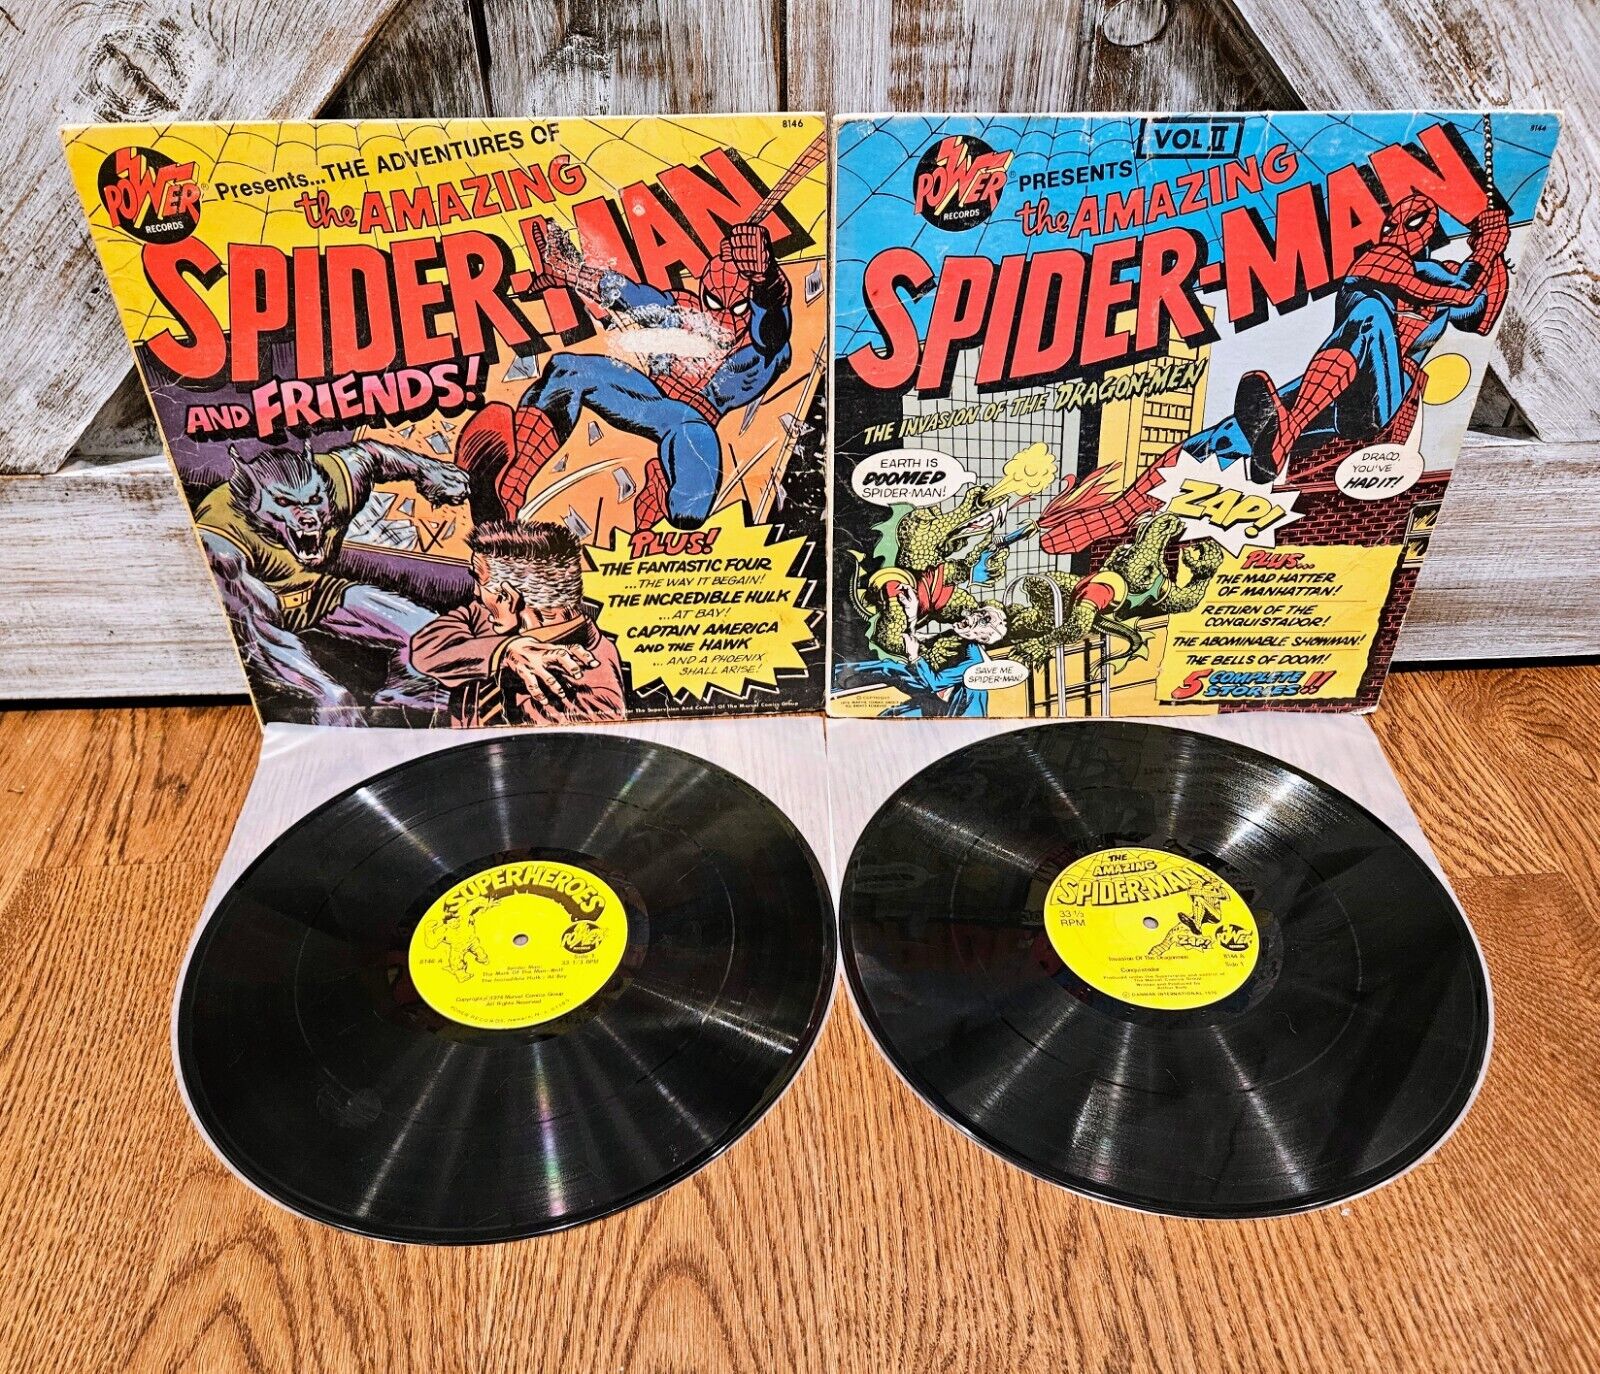 *RARE* The Amazing Spider-Man 1974 Vinyl Albums Vol 1 & 2